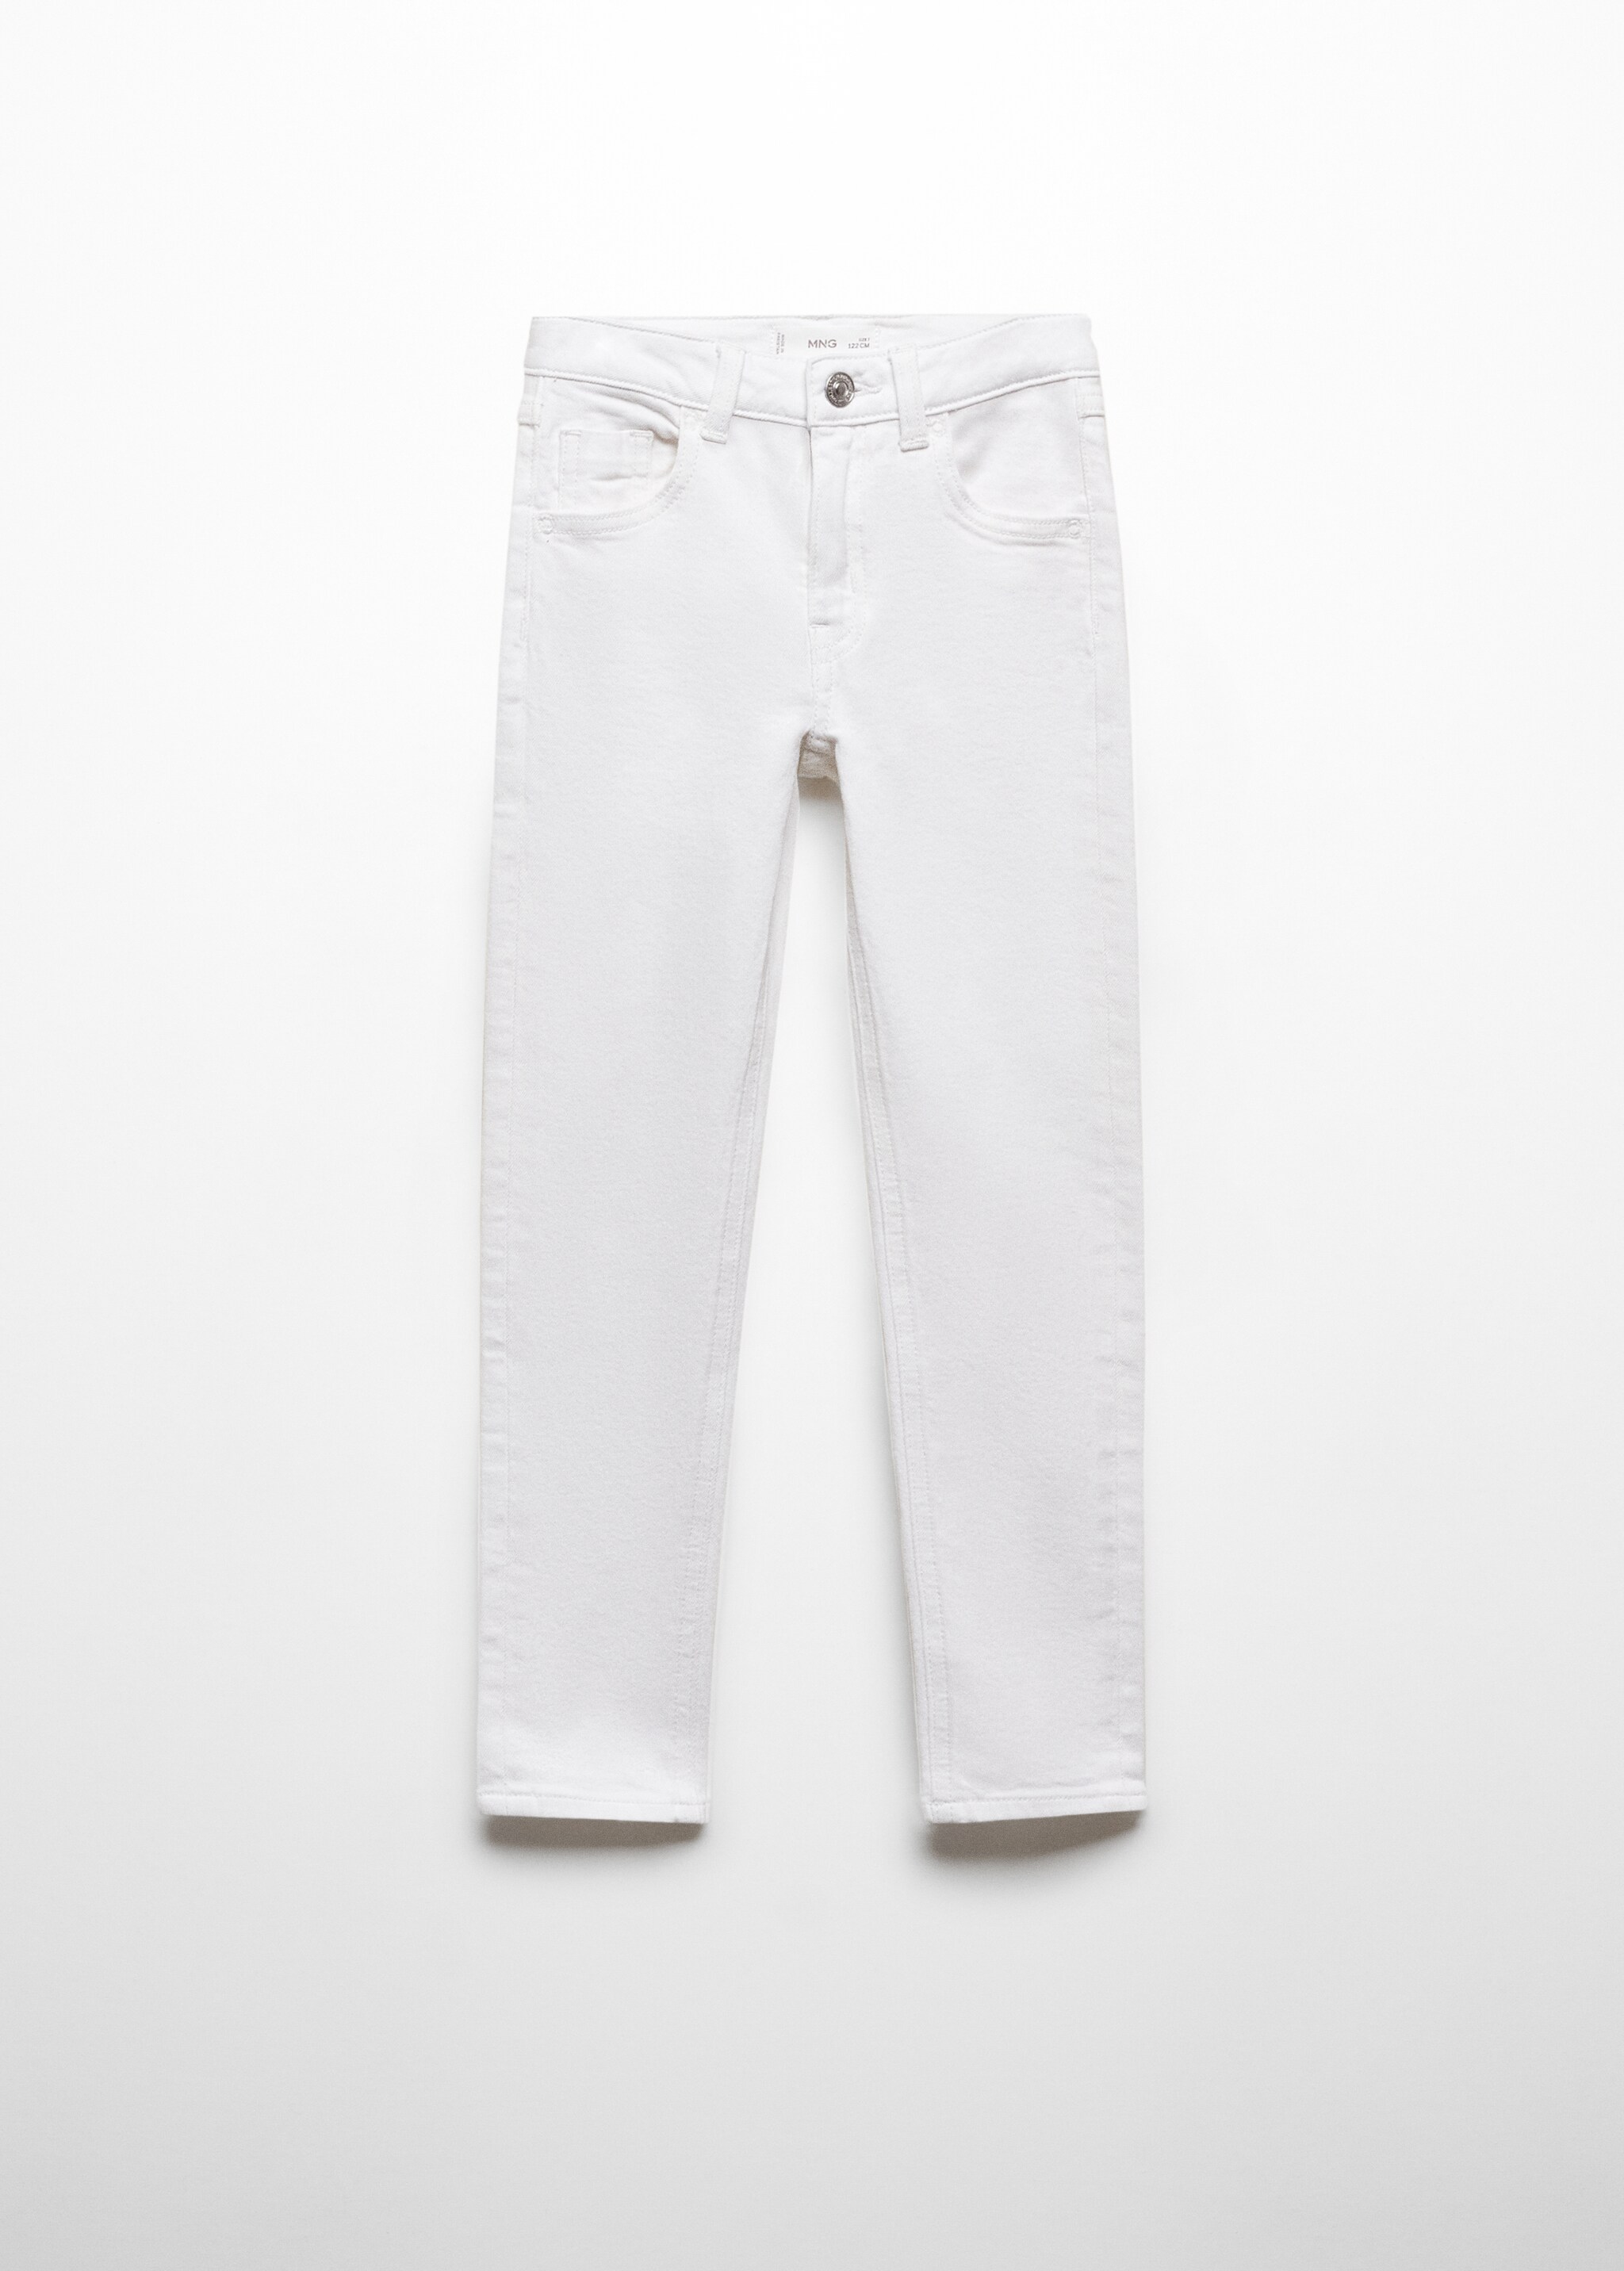 Jeans skinny de algodão - Artigo sem modelo